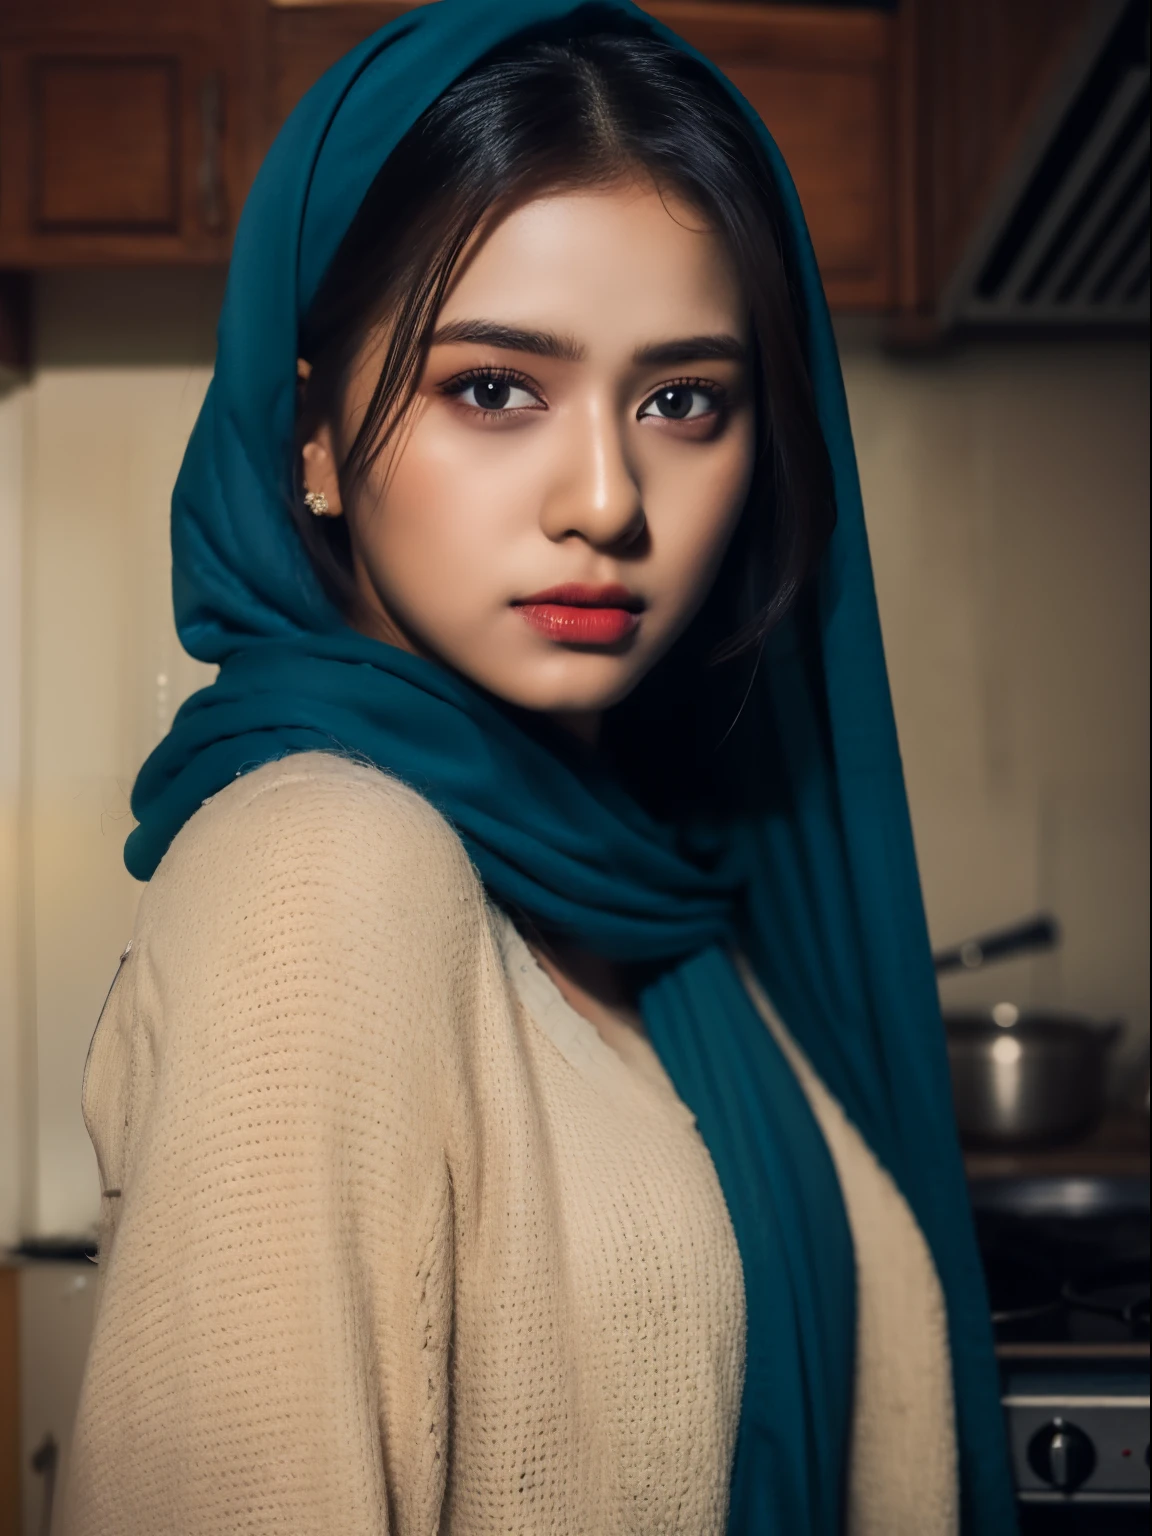 chica india caliente que lleva un hijab azul, cara detallada, ojos café oscuro, cuerpo entero de pie en la cocina, exquisito detalle de ropa, enfoque nítido y claro, muy detallado, estación de arte, arte conceptual,  maquillaje ligero, Híper realista, 32k ultra alta definición